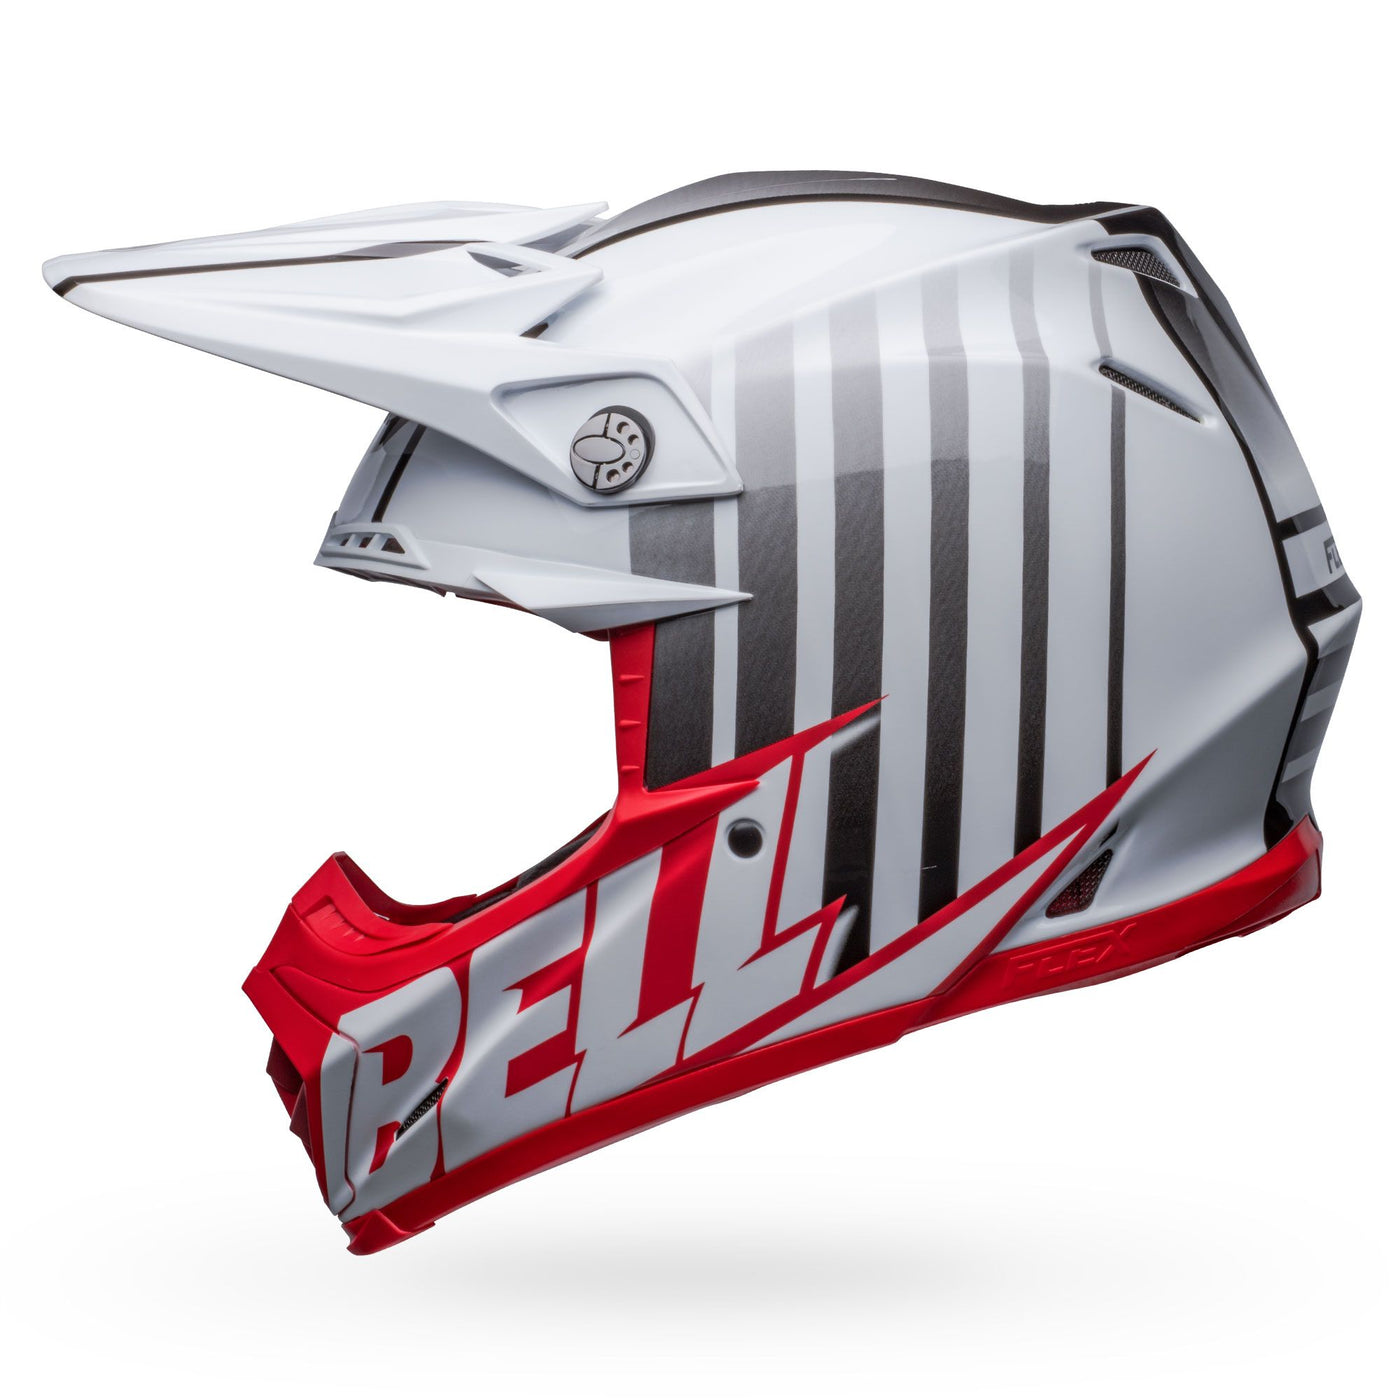 bell moto 9s flex dirt motorcycle helmet sprint matte gloss white red left